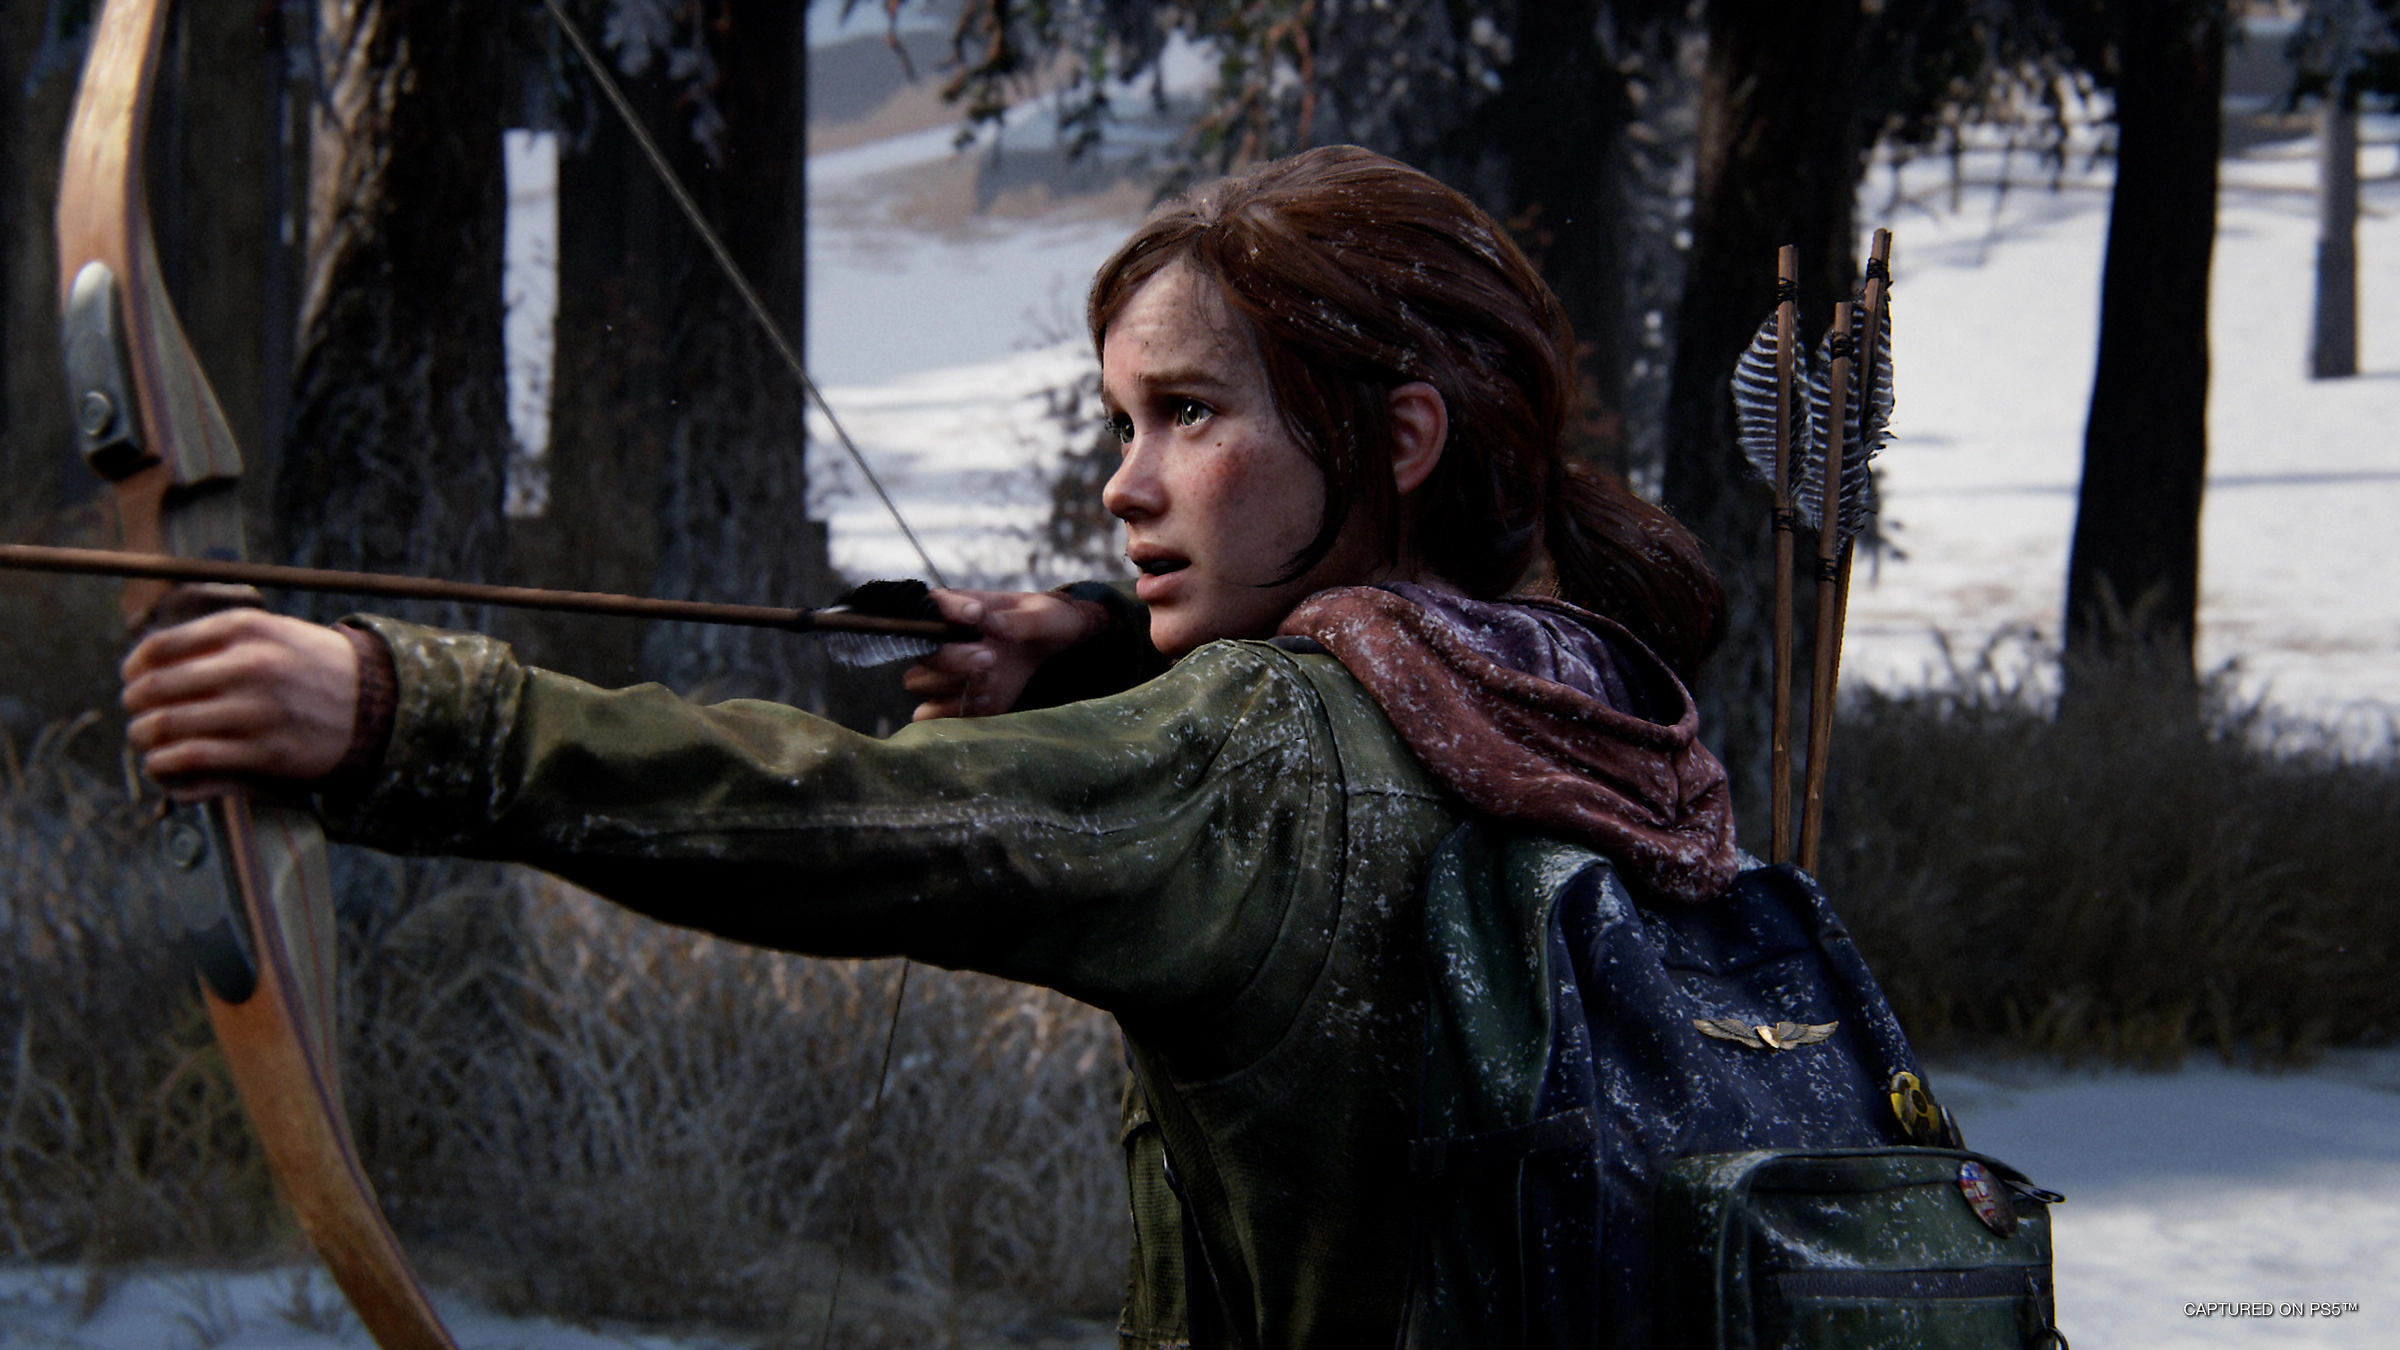 La protagonista Ellie con cara de miedo sujetando una flecha con su arco